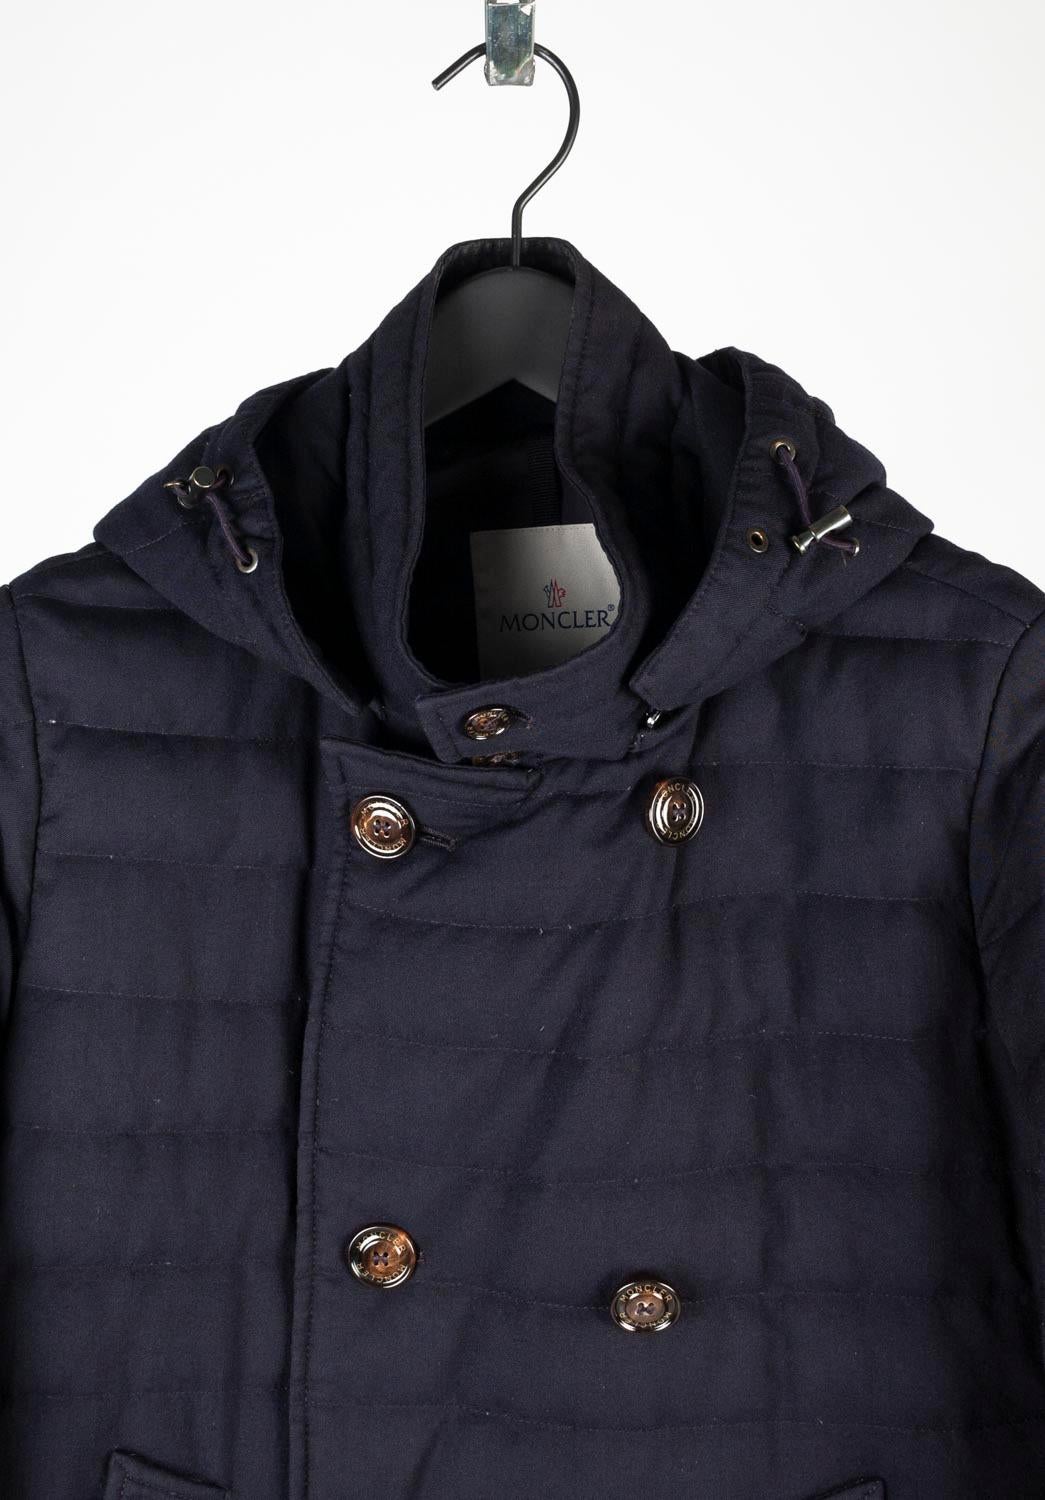 100% authentique Moncler Roux blue down jacket for men, S623 
Couleur : bleu
(La couleur réelle peut varier légèrement en raison de l'interprétation individuelle de l'écran de l'ordinateur).
MATERIAL : 100% laine
Taille de l'étiquette : 2